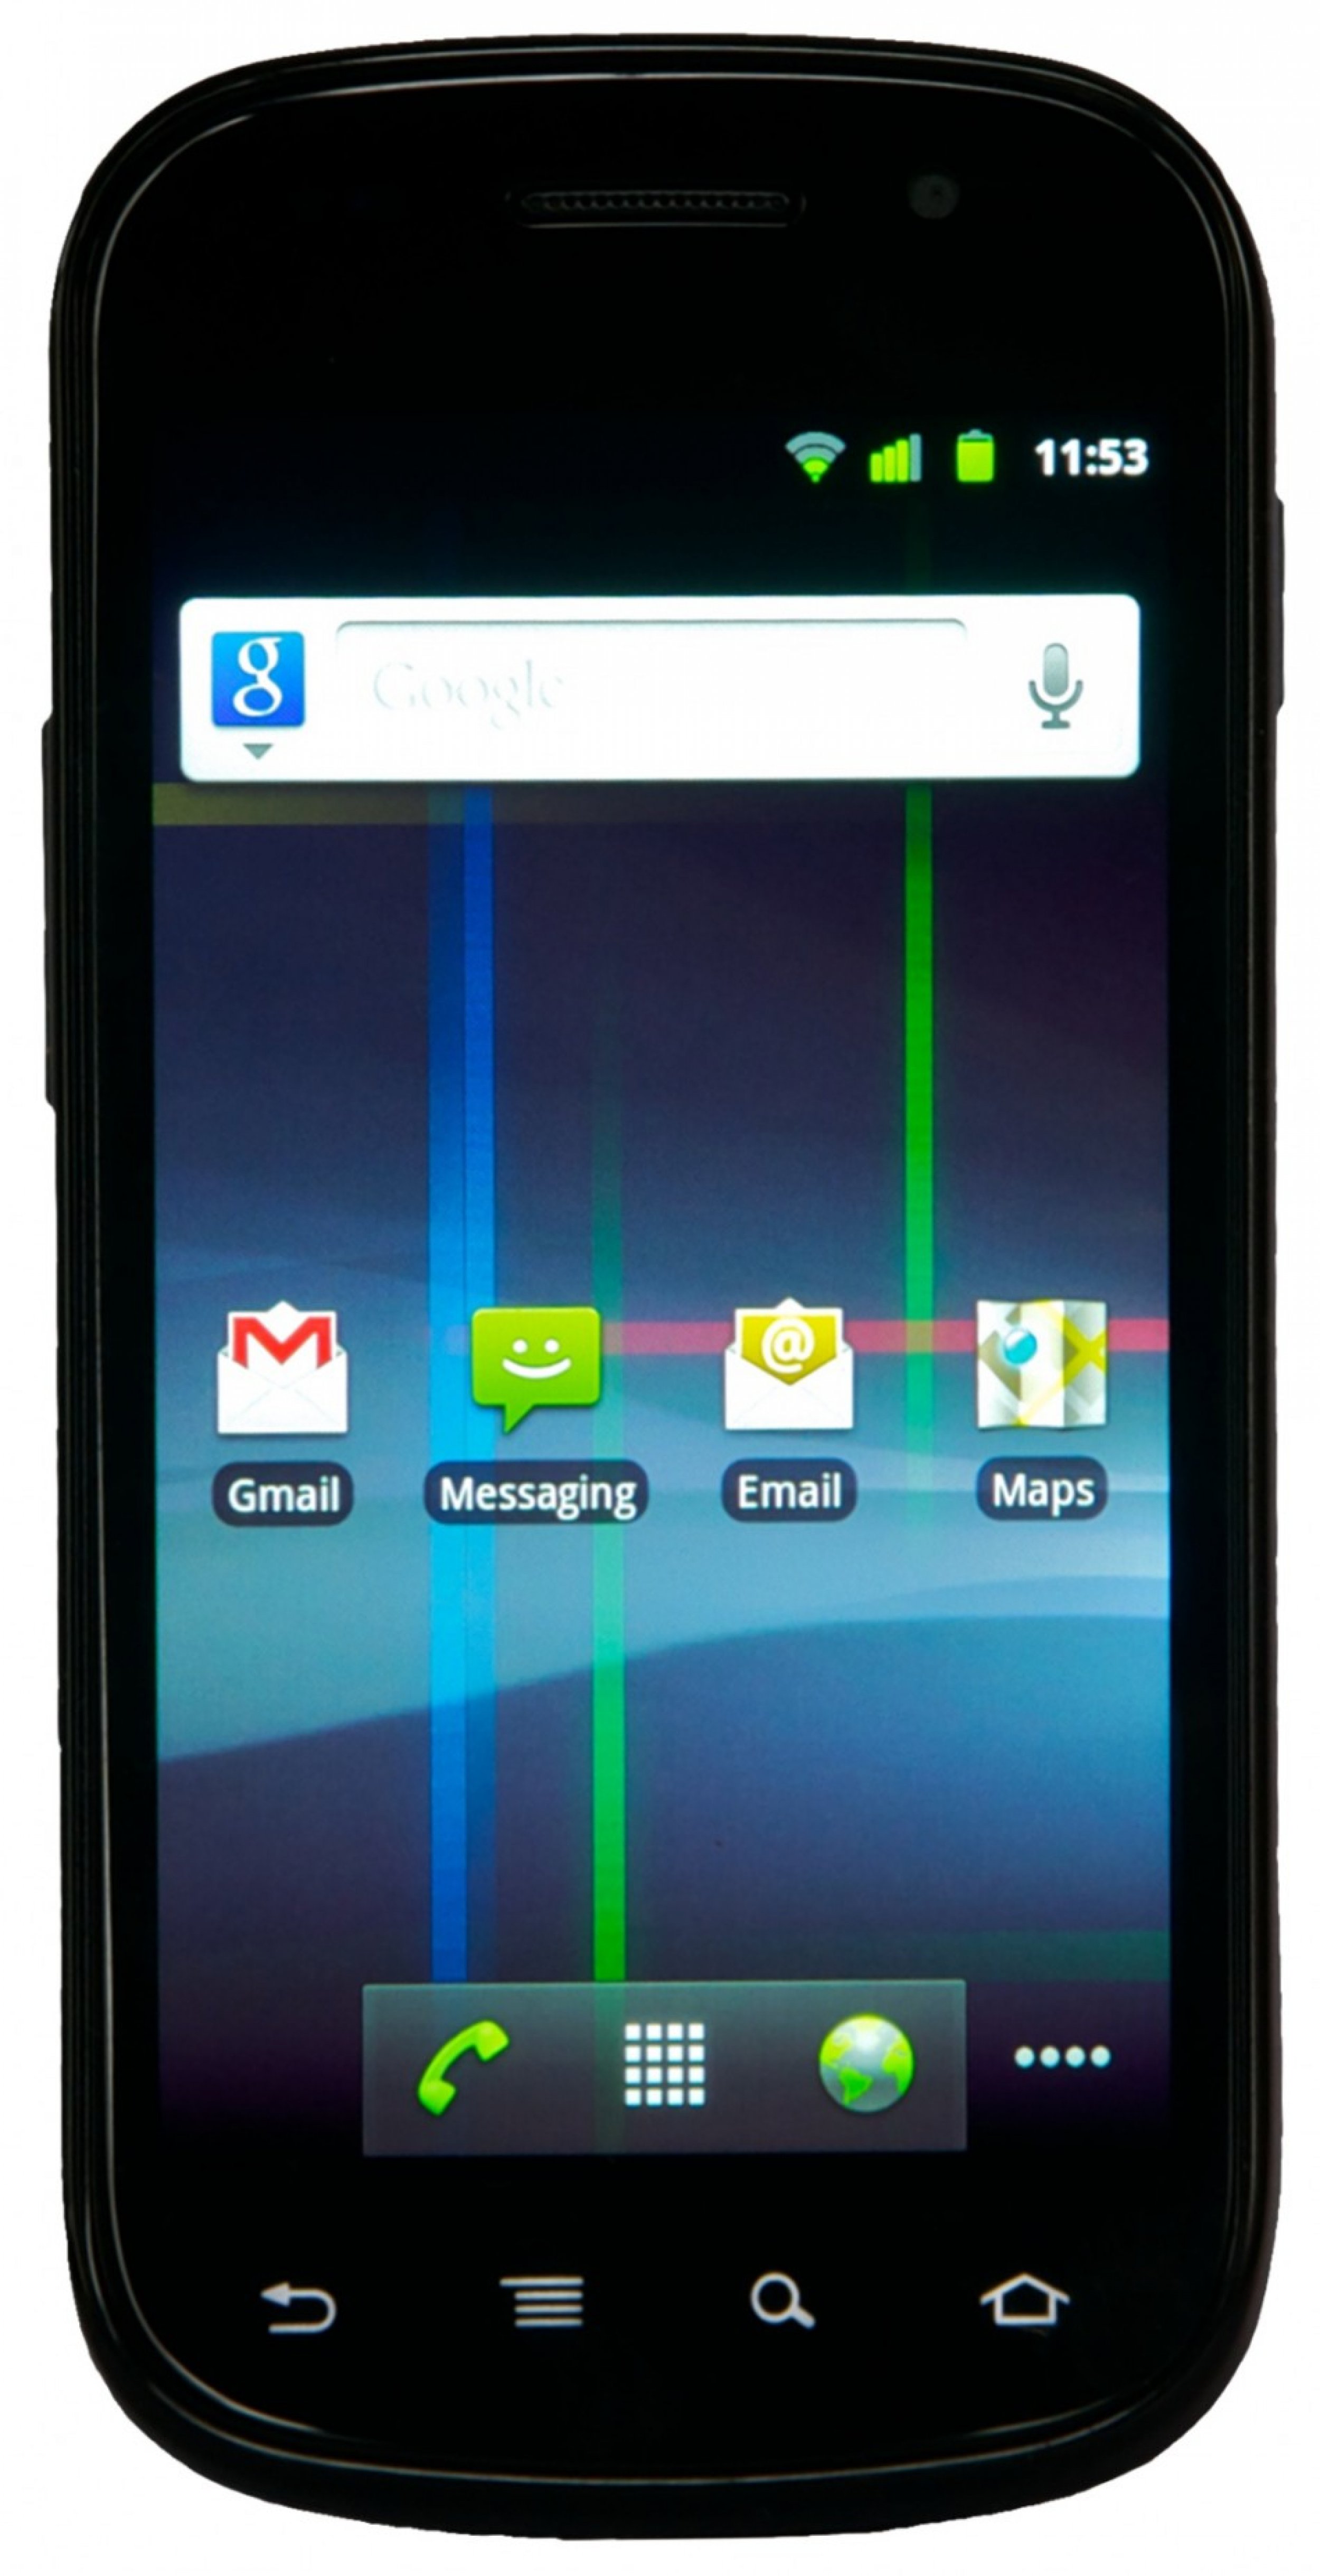 Nexus S GSM variant